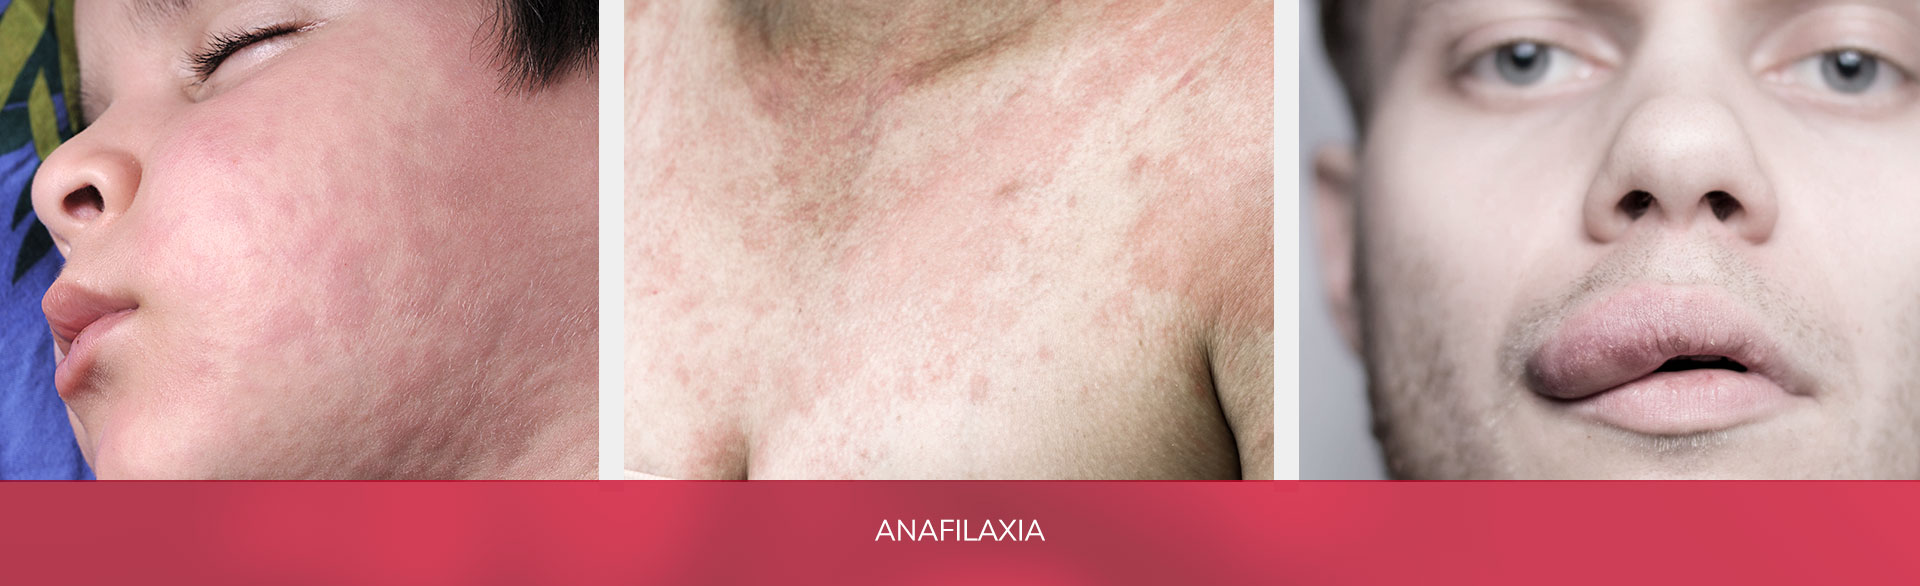 La anafilaxia es el tipo más severo y grave de alergia. Constituye una emergencia médica y es potencialmente mortal a corto plazo.